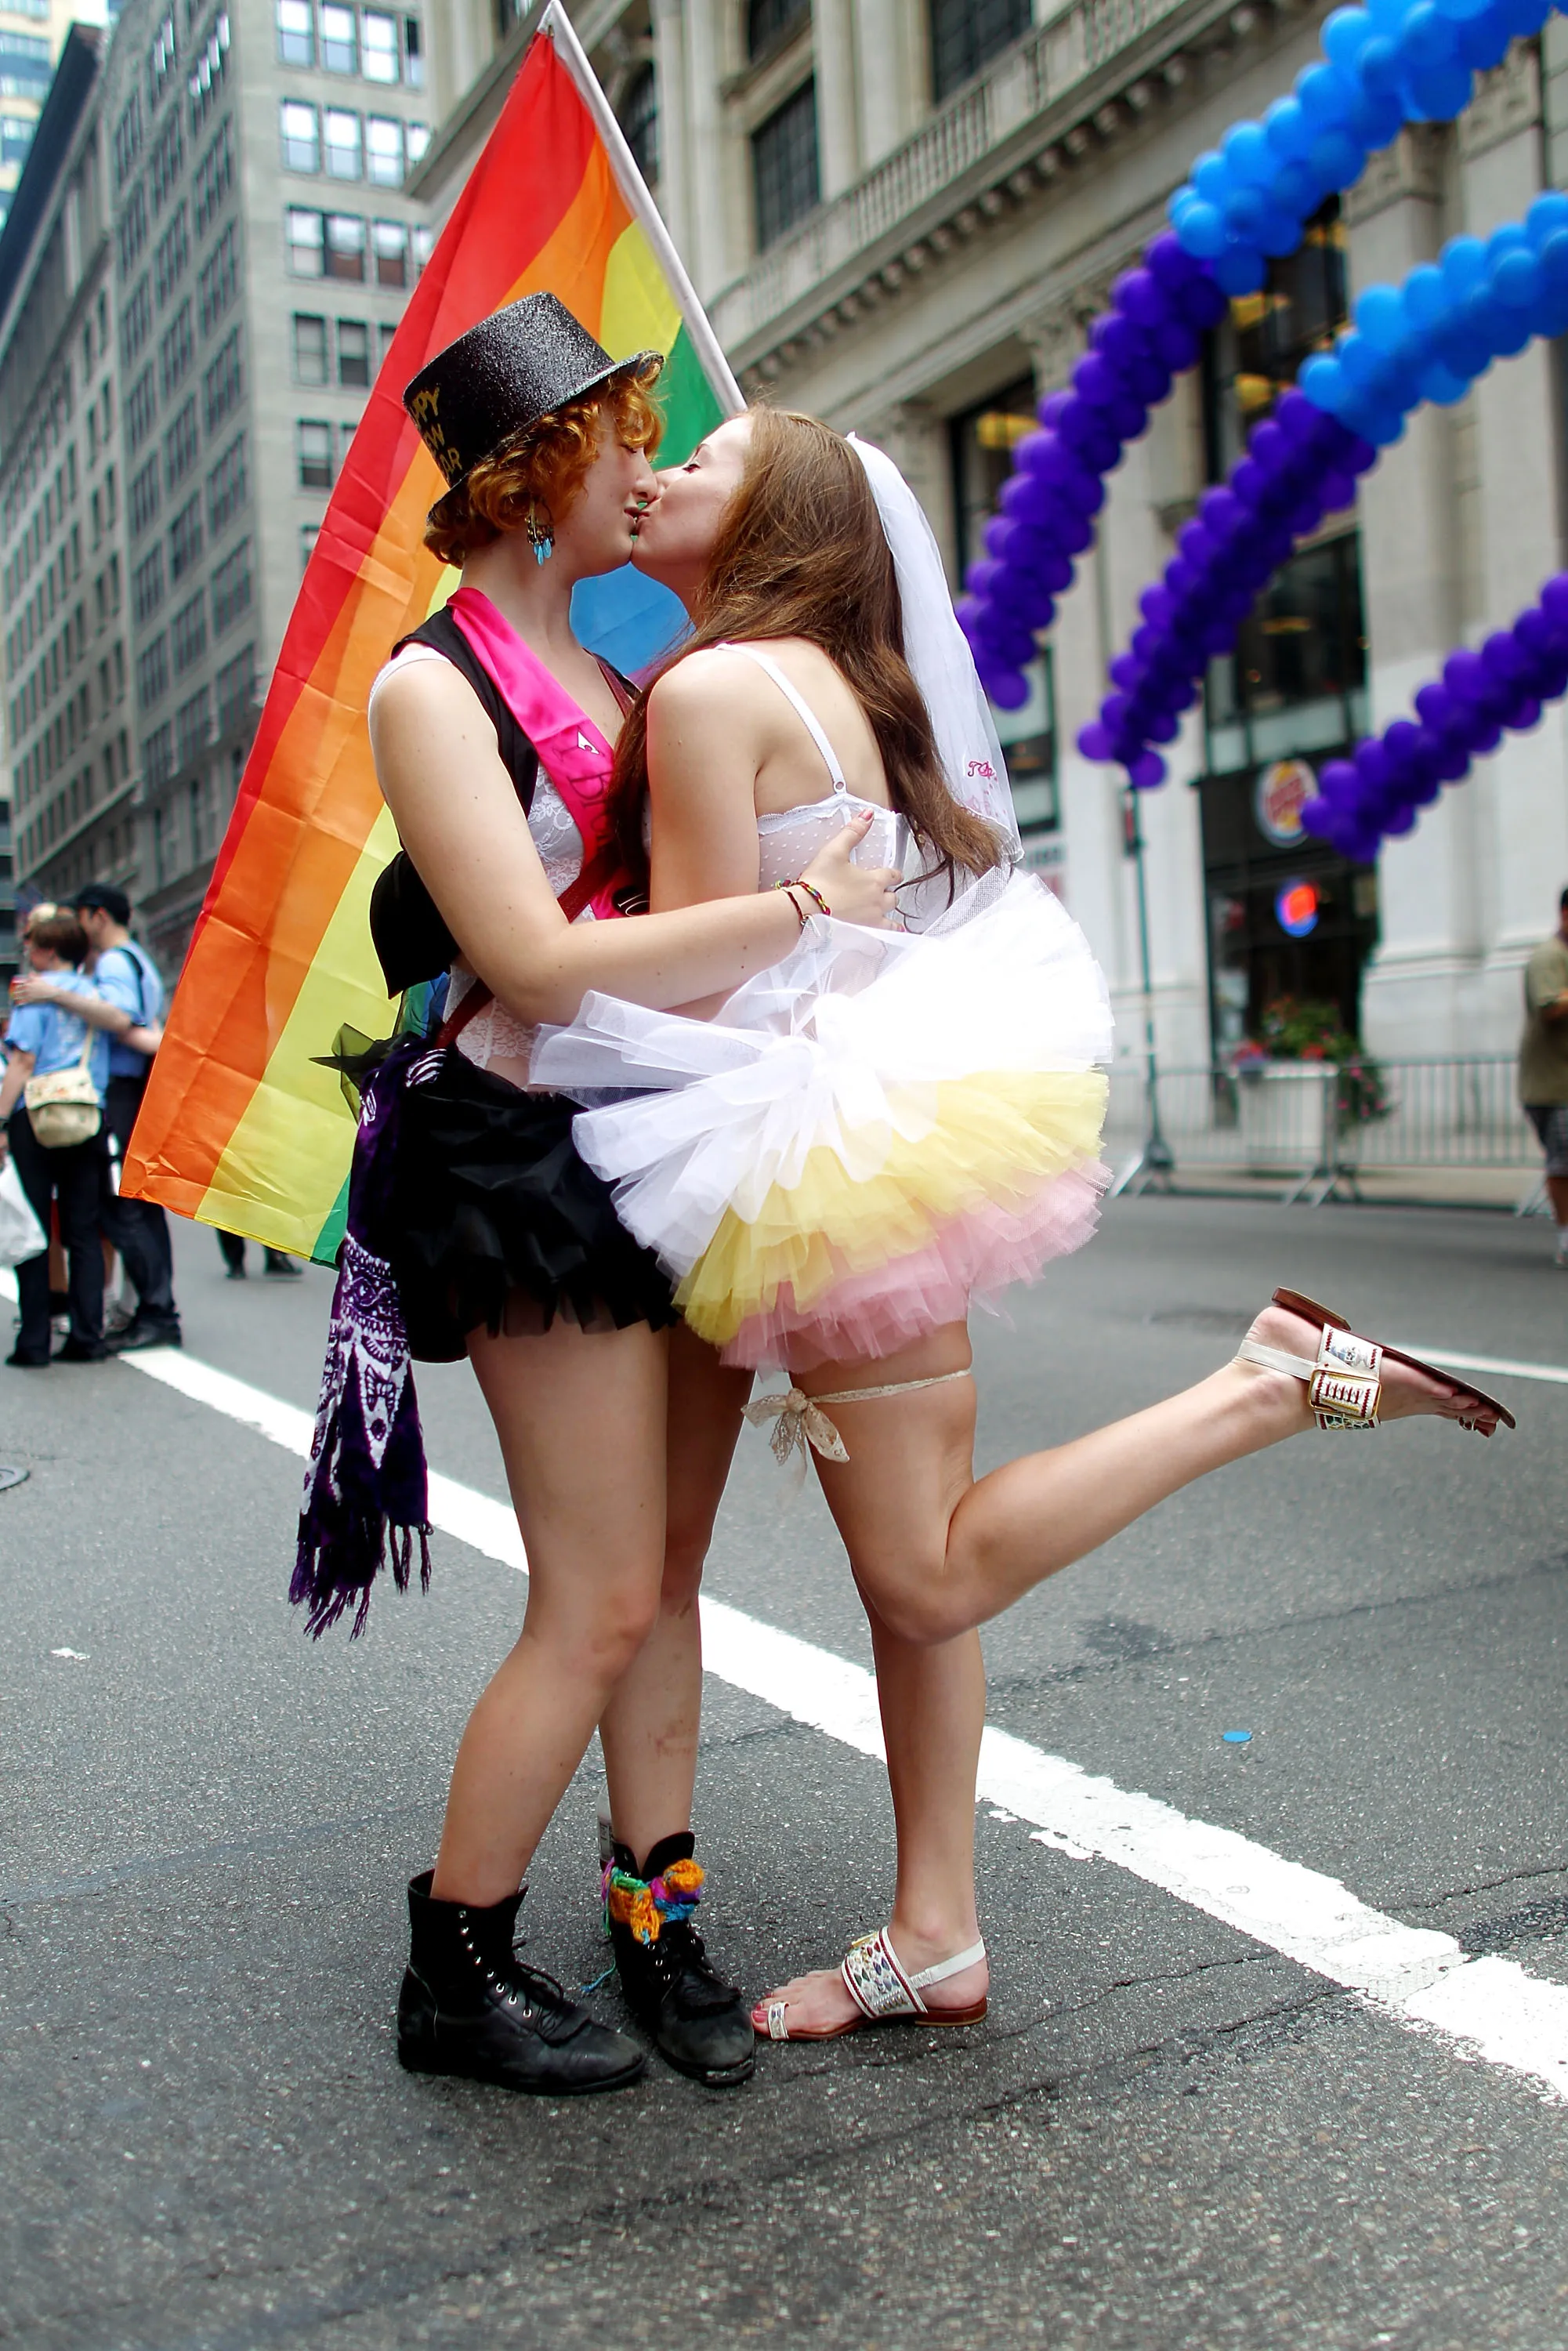 геи и лесбиянки на фото фото 96